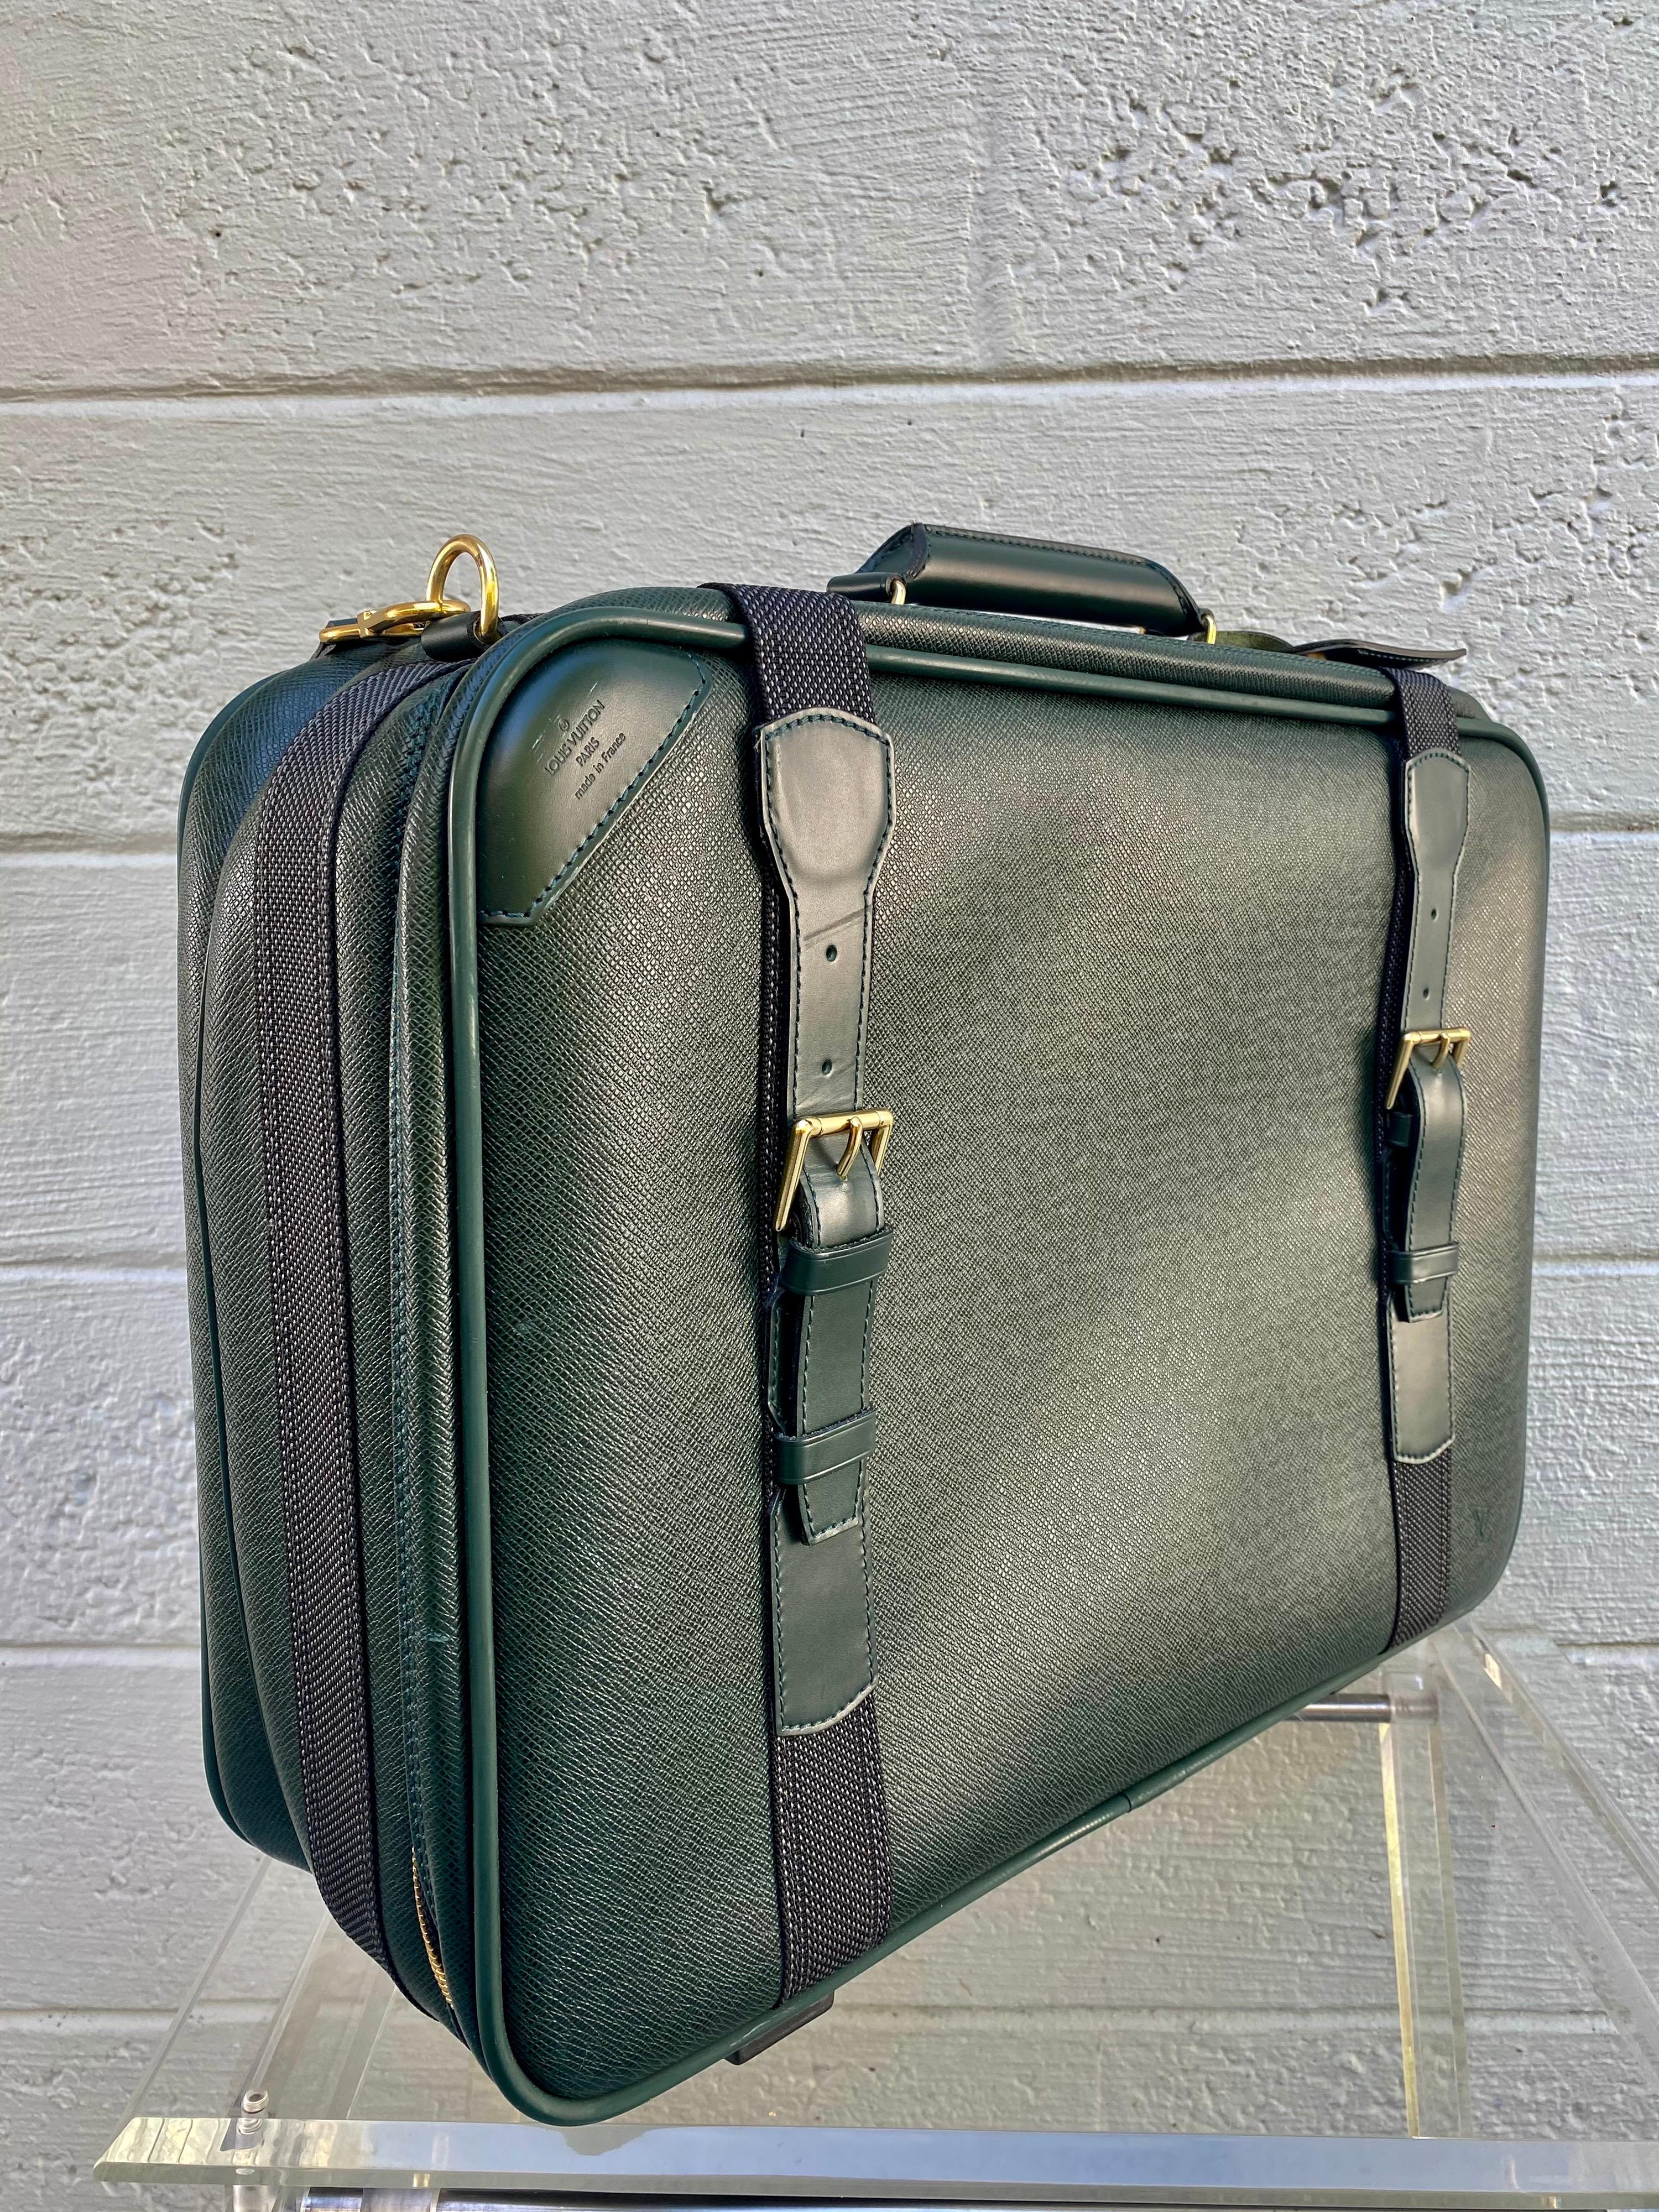 Die klassische Louis Vuitton Satellite Taiga Ledertasche ist aus jagdgrünem Leder gefertigt und verfügt über einen einzelnen gerollten Ledergriff, Rindslederbesätze, Schnallenriemen und goldfarbene Beschläge. Der Zwei-Wege-Reißverschluss gibt den